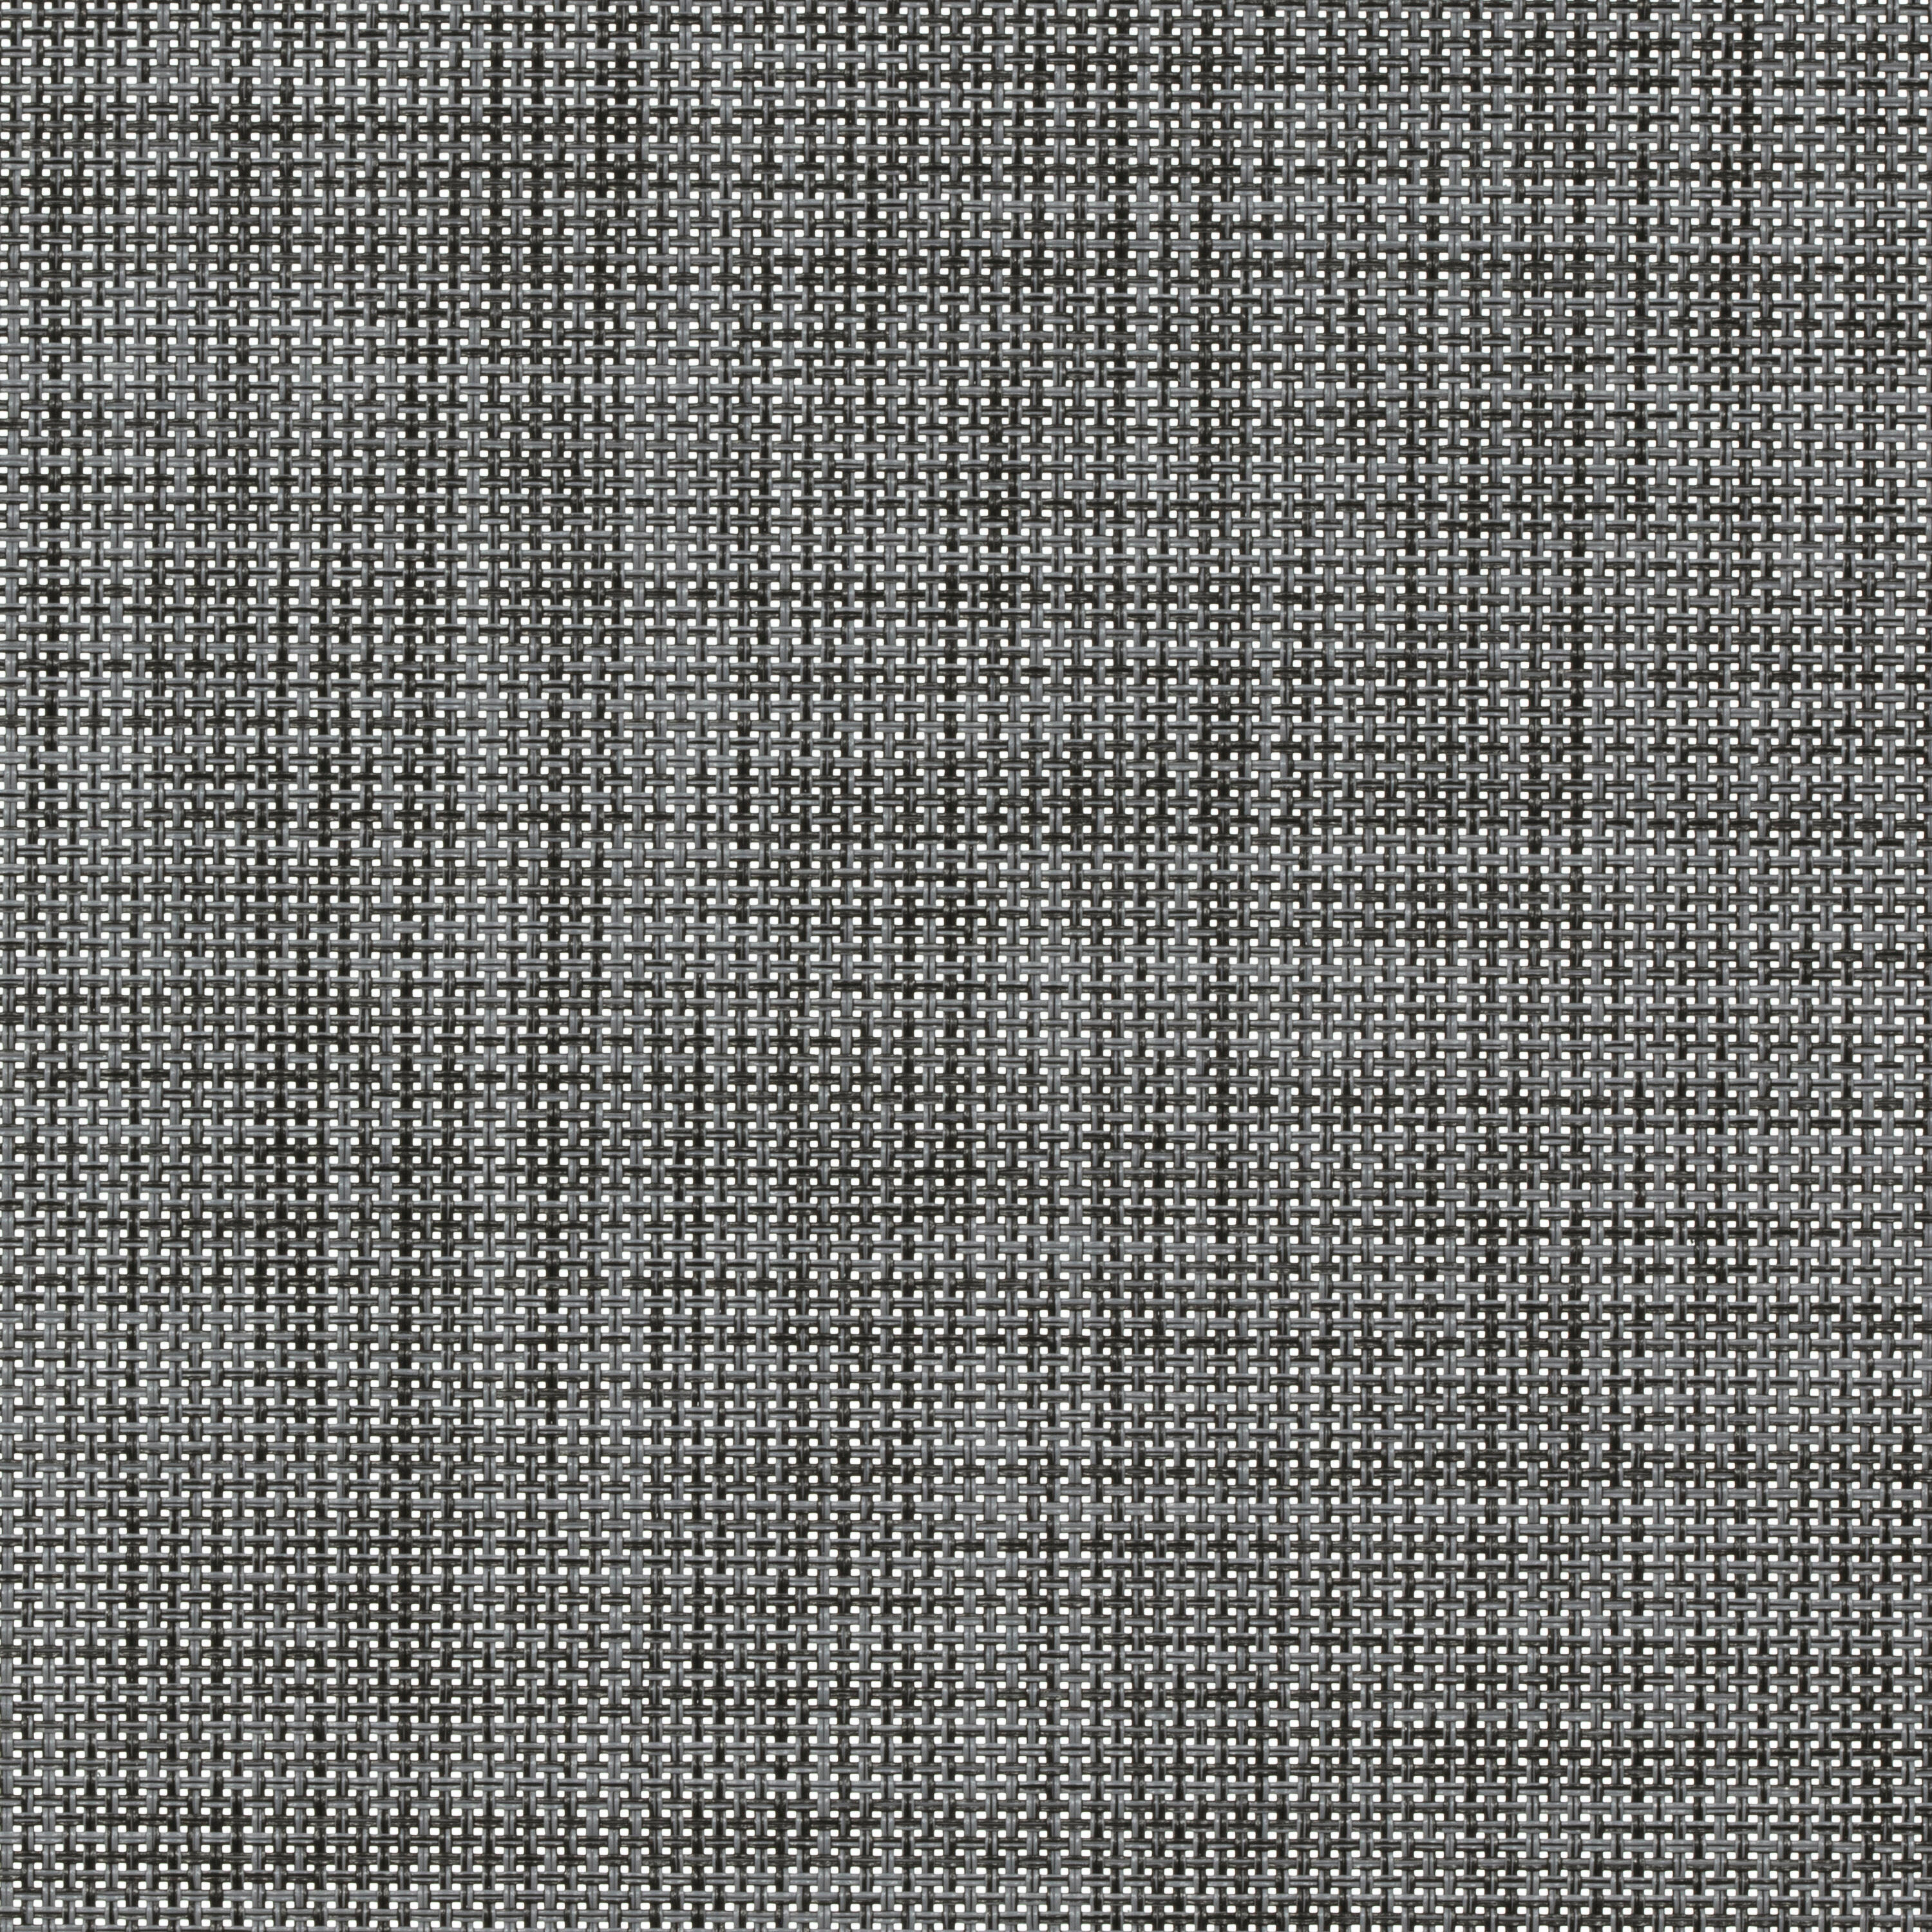 Tessuto per tende a rullo filtrante INSPIRE Puebla grigio / argento 160.8 x 250 cm - 2